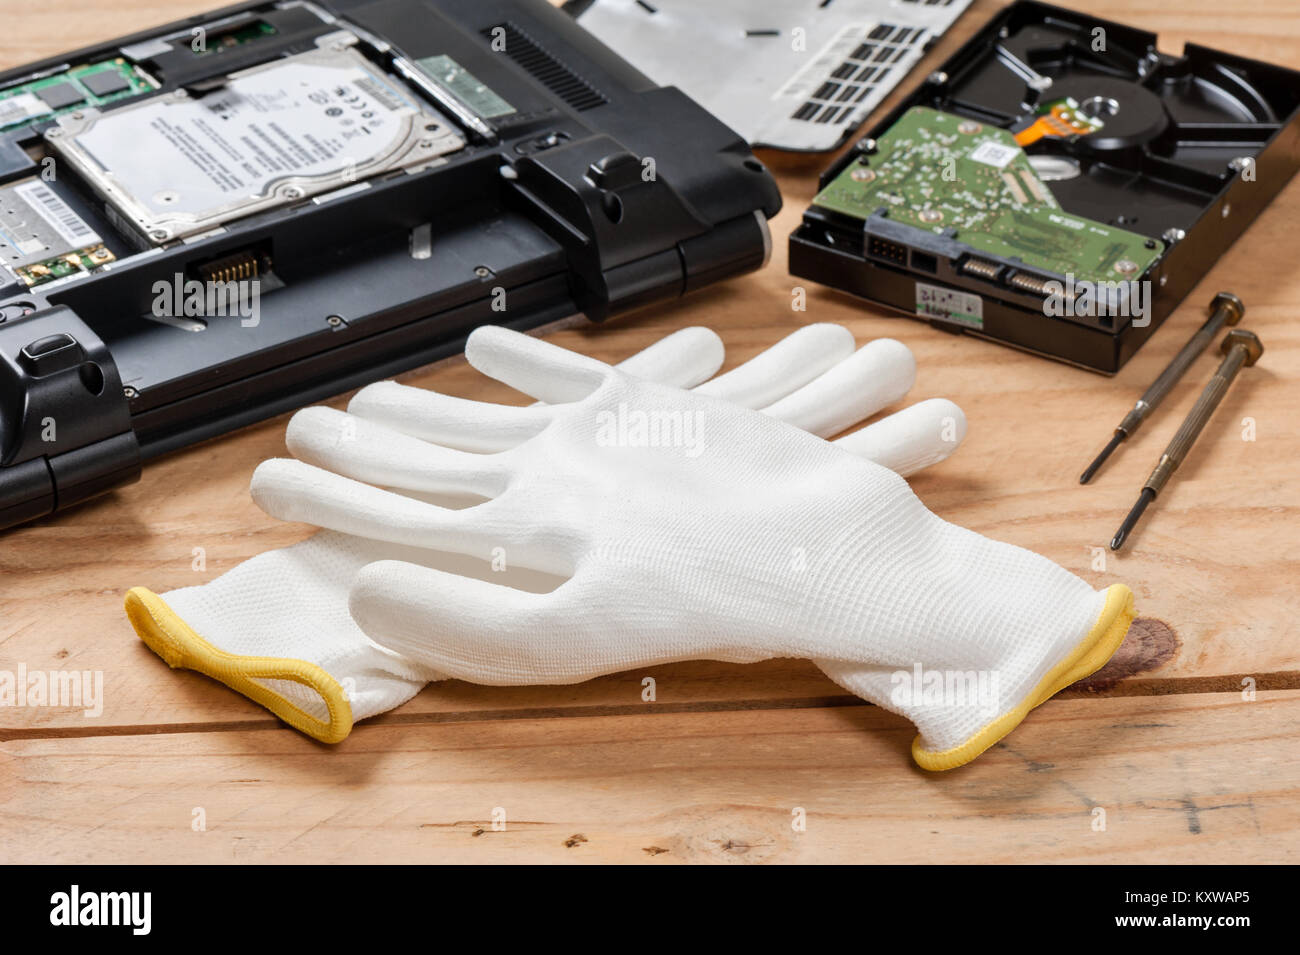 Des gants antistatiques blanc, des gants antistatiques réduire l'électricité statique qui peut endommager les composants électriques. Banque D'Images